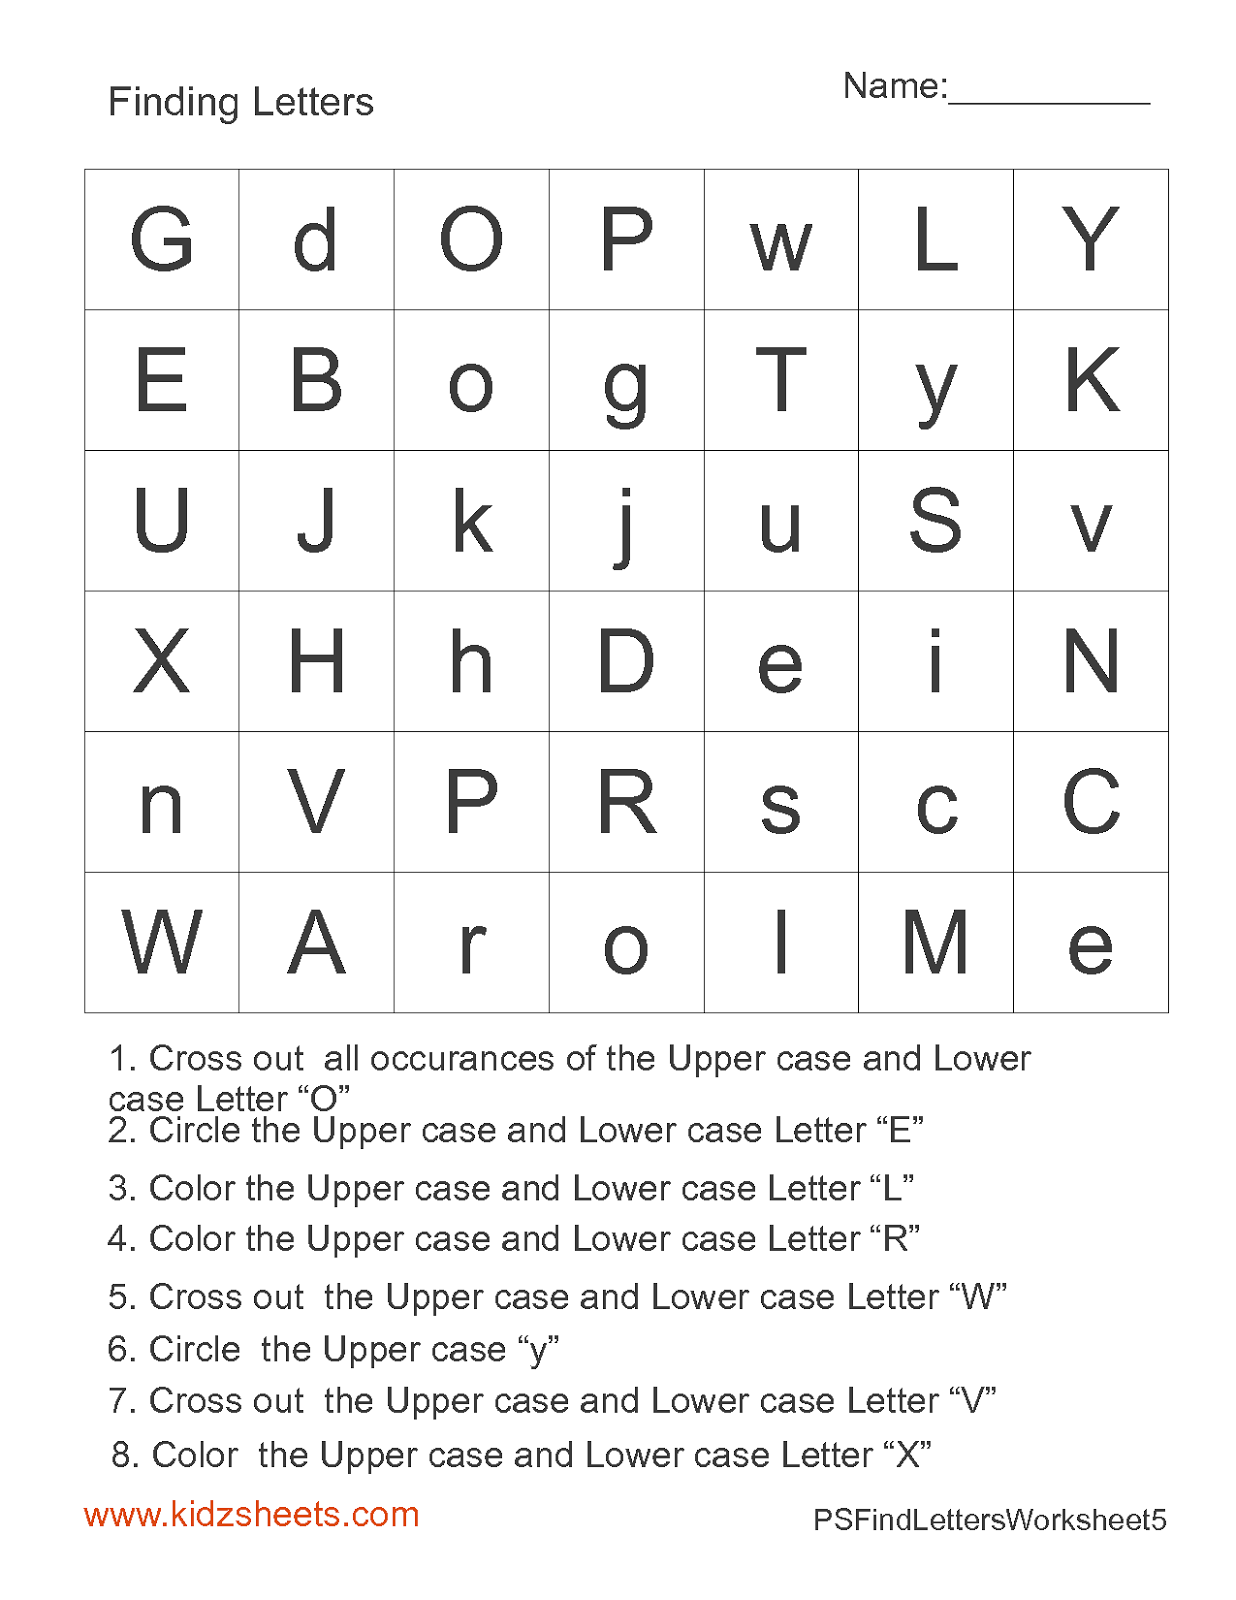 Preschool Letter Find Worksheets Image